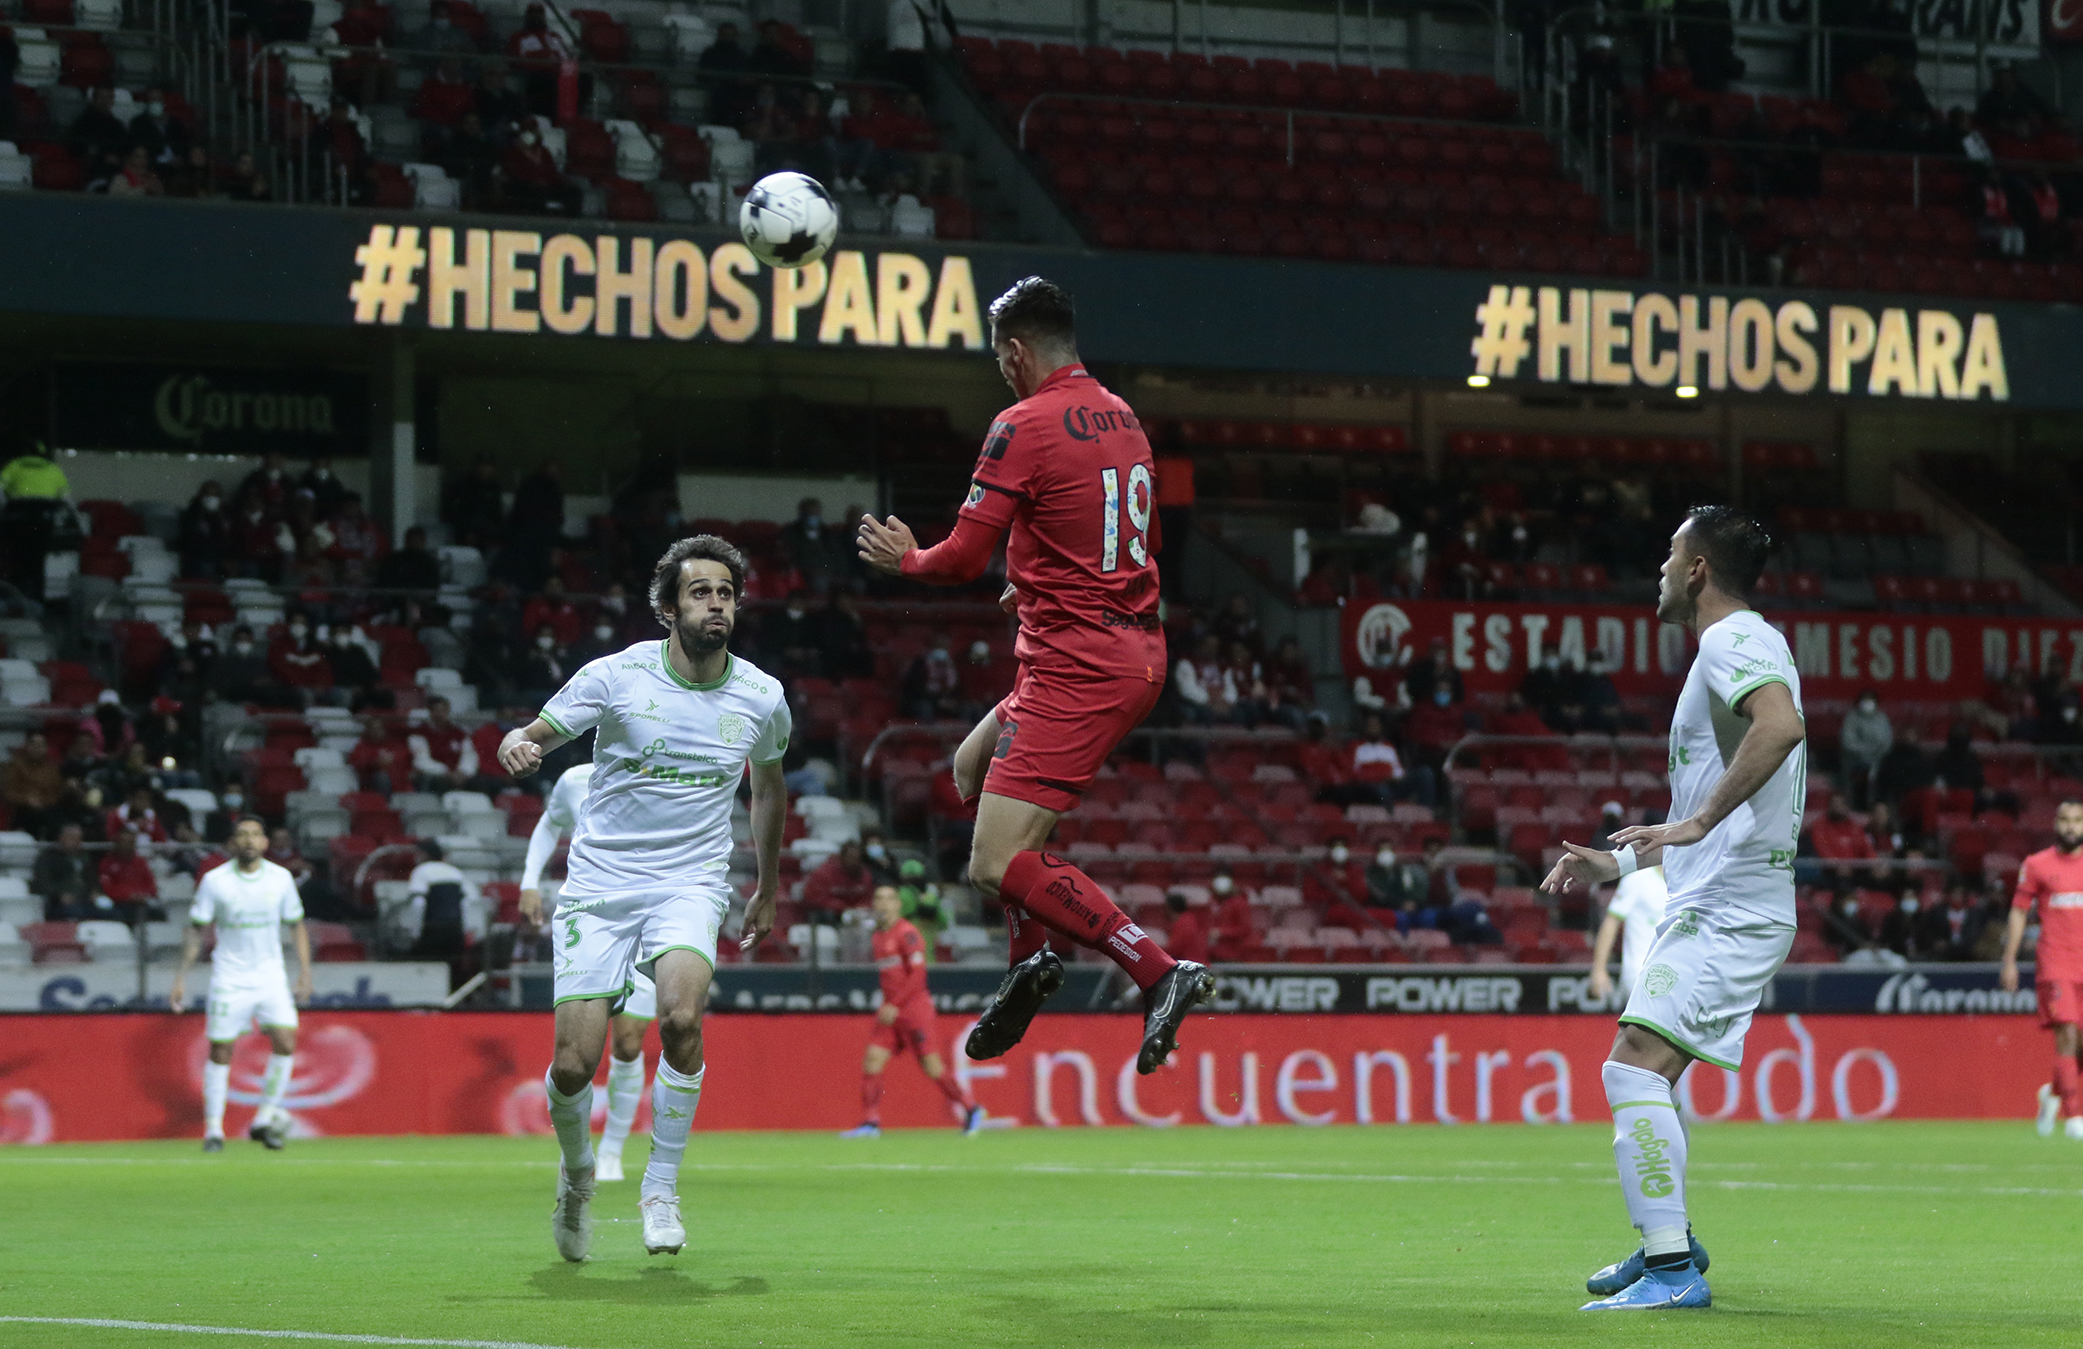 Con gol sobre el final, FC Juárez se llevó el triunfo en su visita al Estadio Nemesio Diez